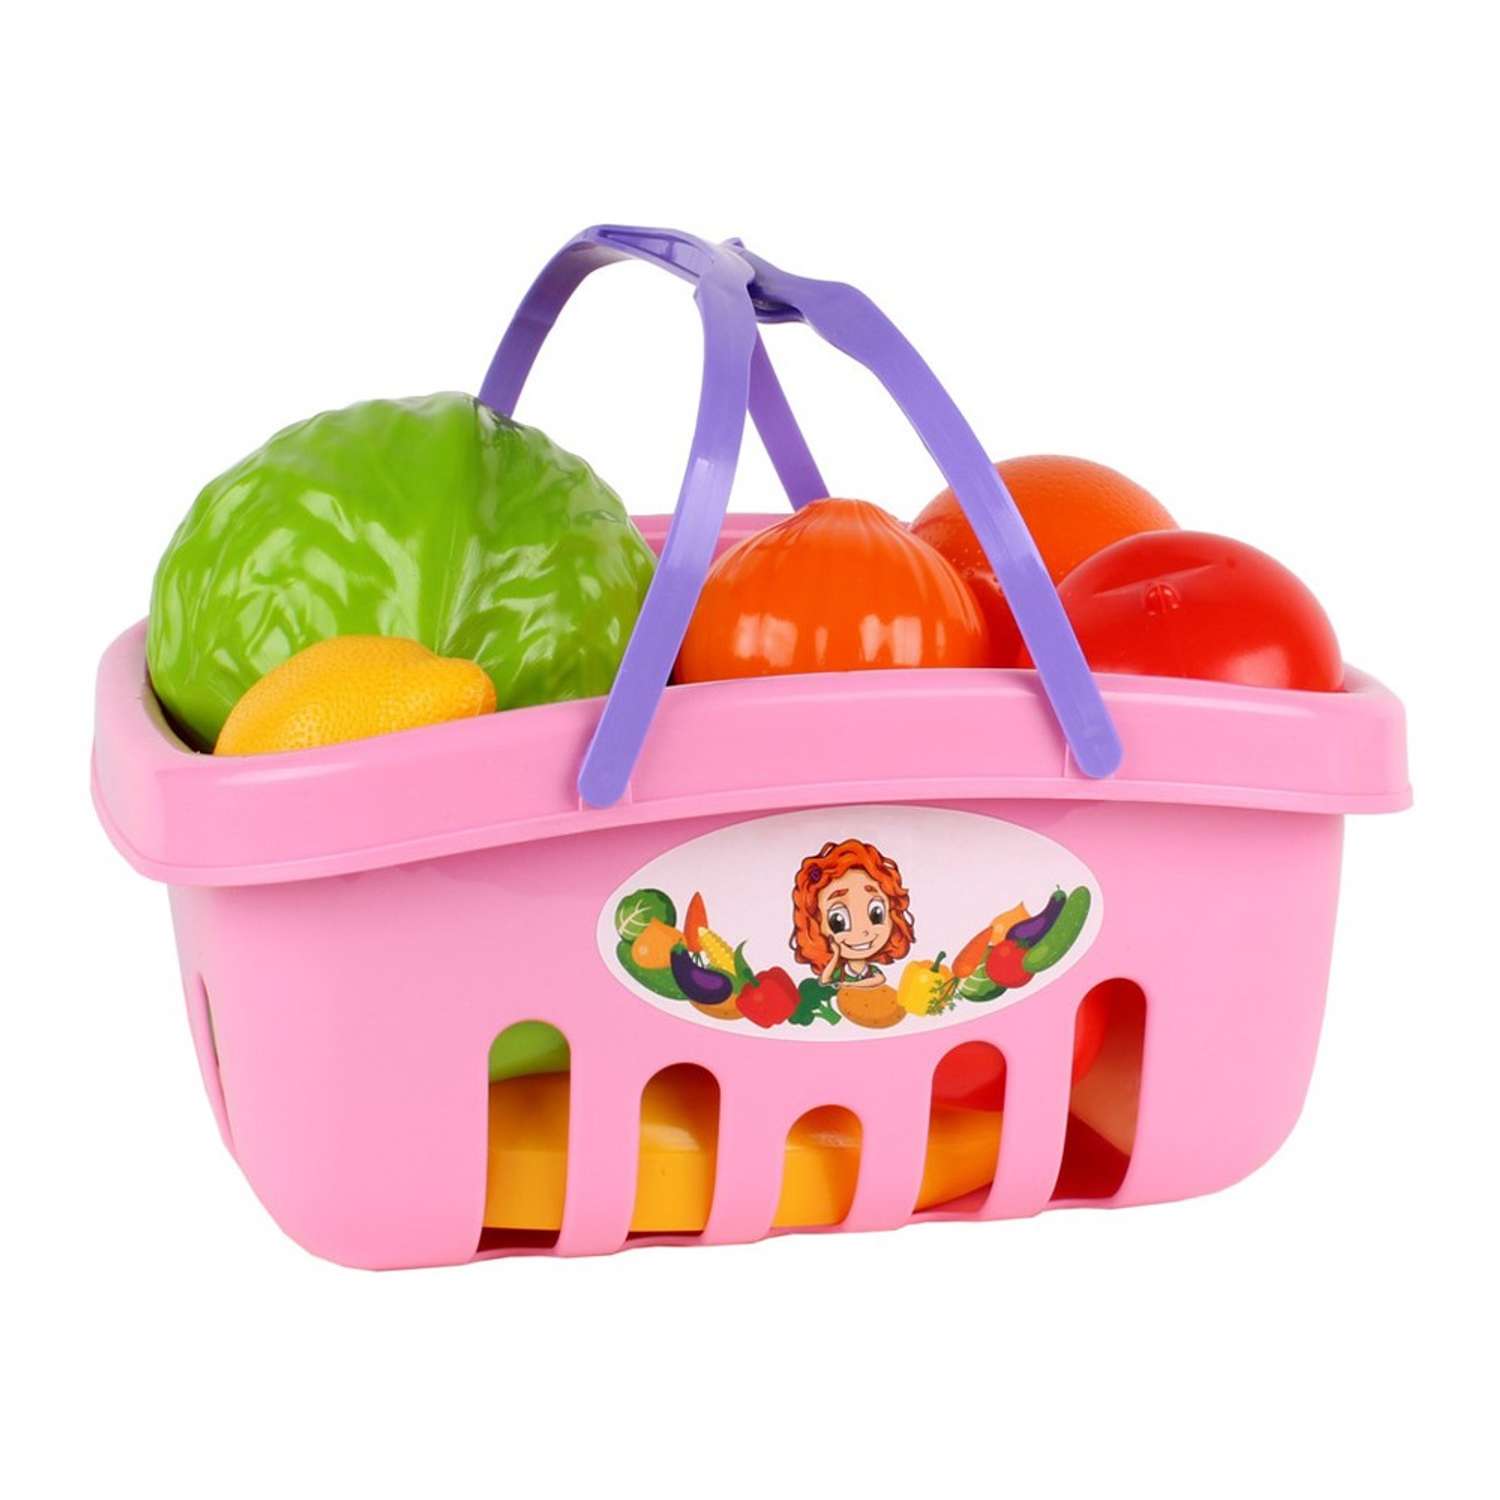 Набор игровой Технок овощи и фрукты в корзинке 17 предметов розовый - фото 1